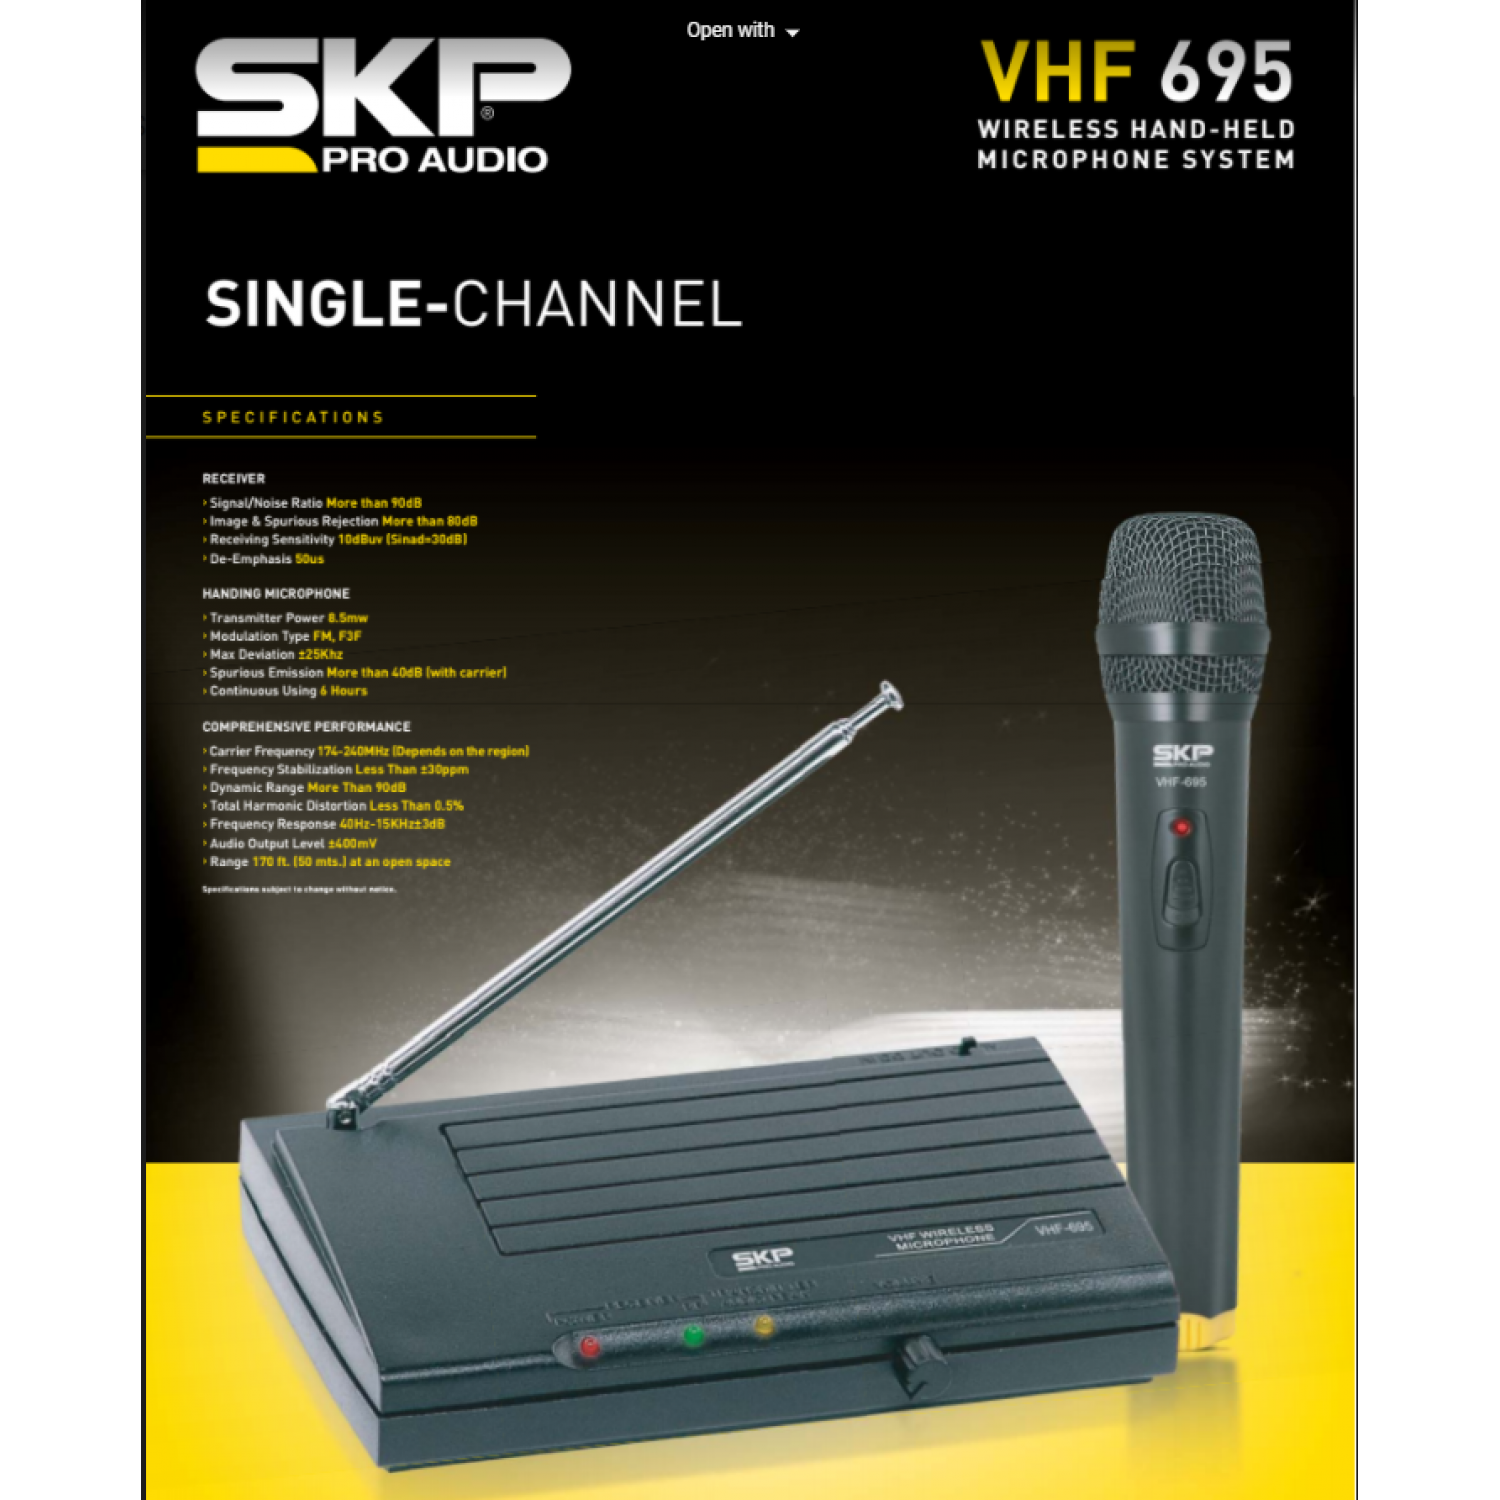 VHF-695